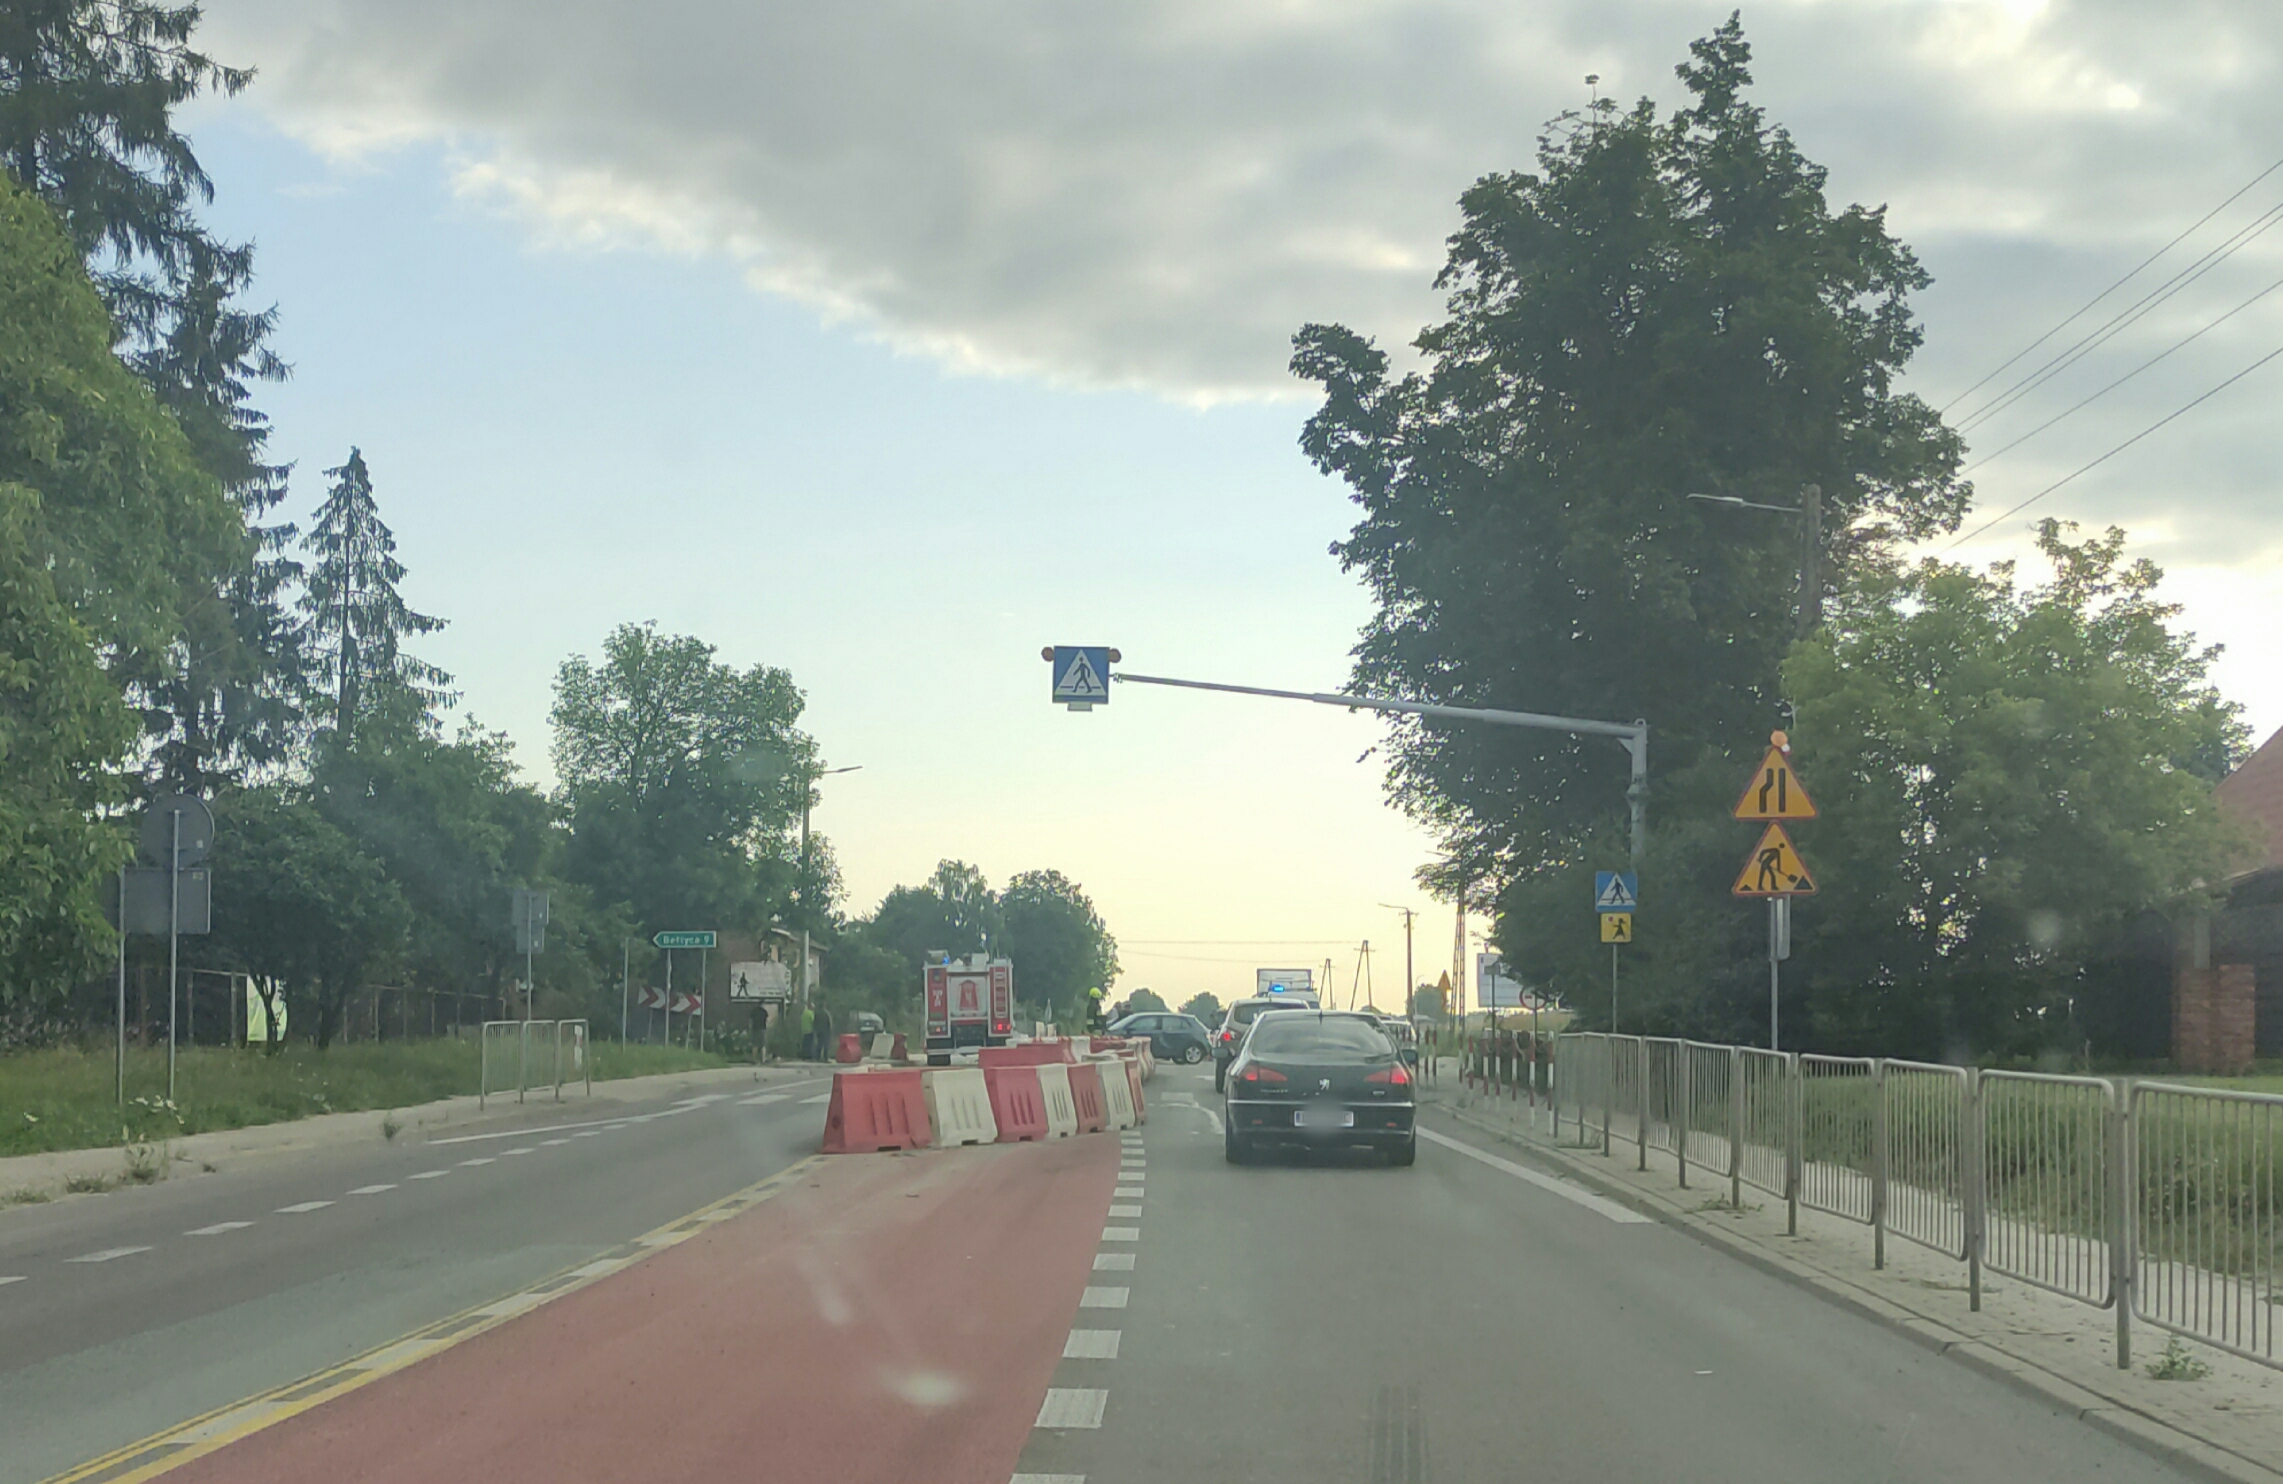 Utrudnienia w ruchu na trasie Lublin – Kraśnik po zderzeniu dwóch pojazdów (zdjęcia)